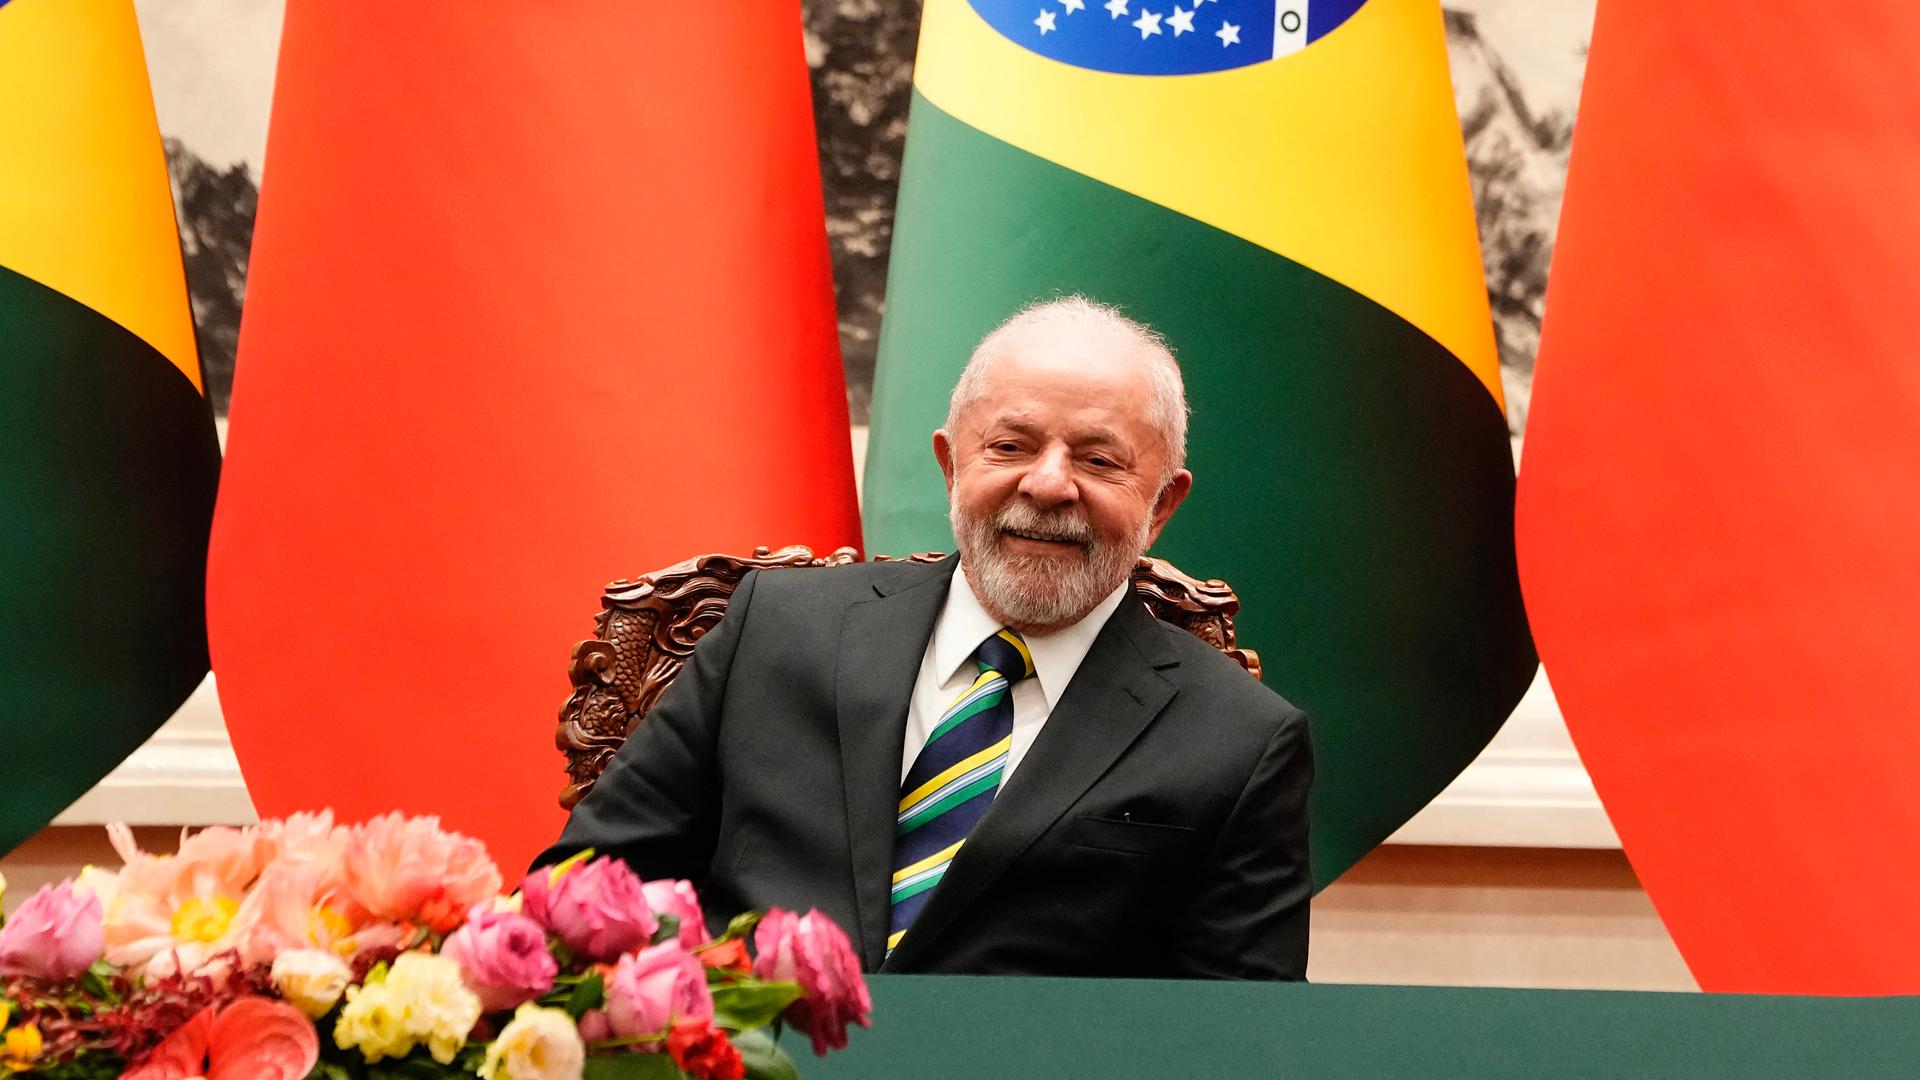 Luiz Inacio Lula da Silva sitzt vor chinesischen und brasilianischen Flaggen und lächelt.